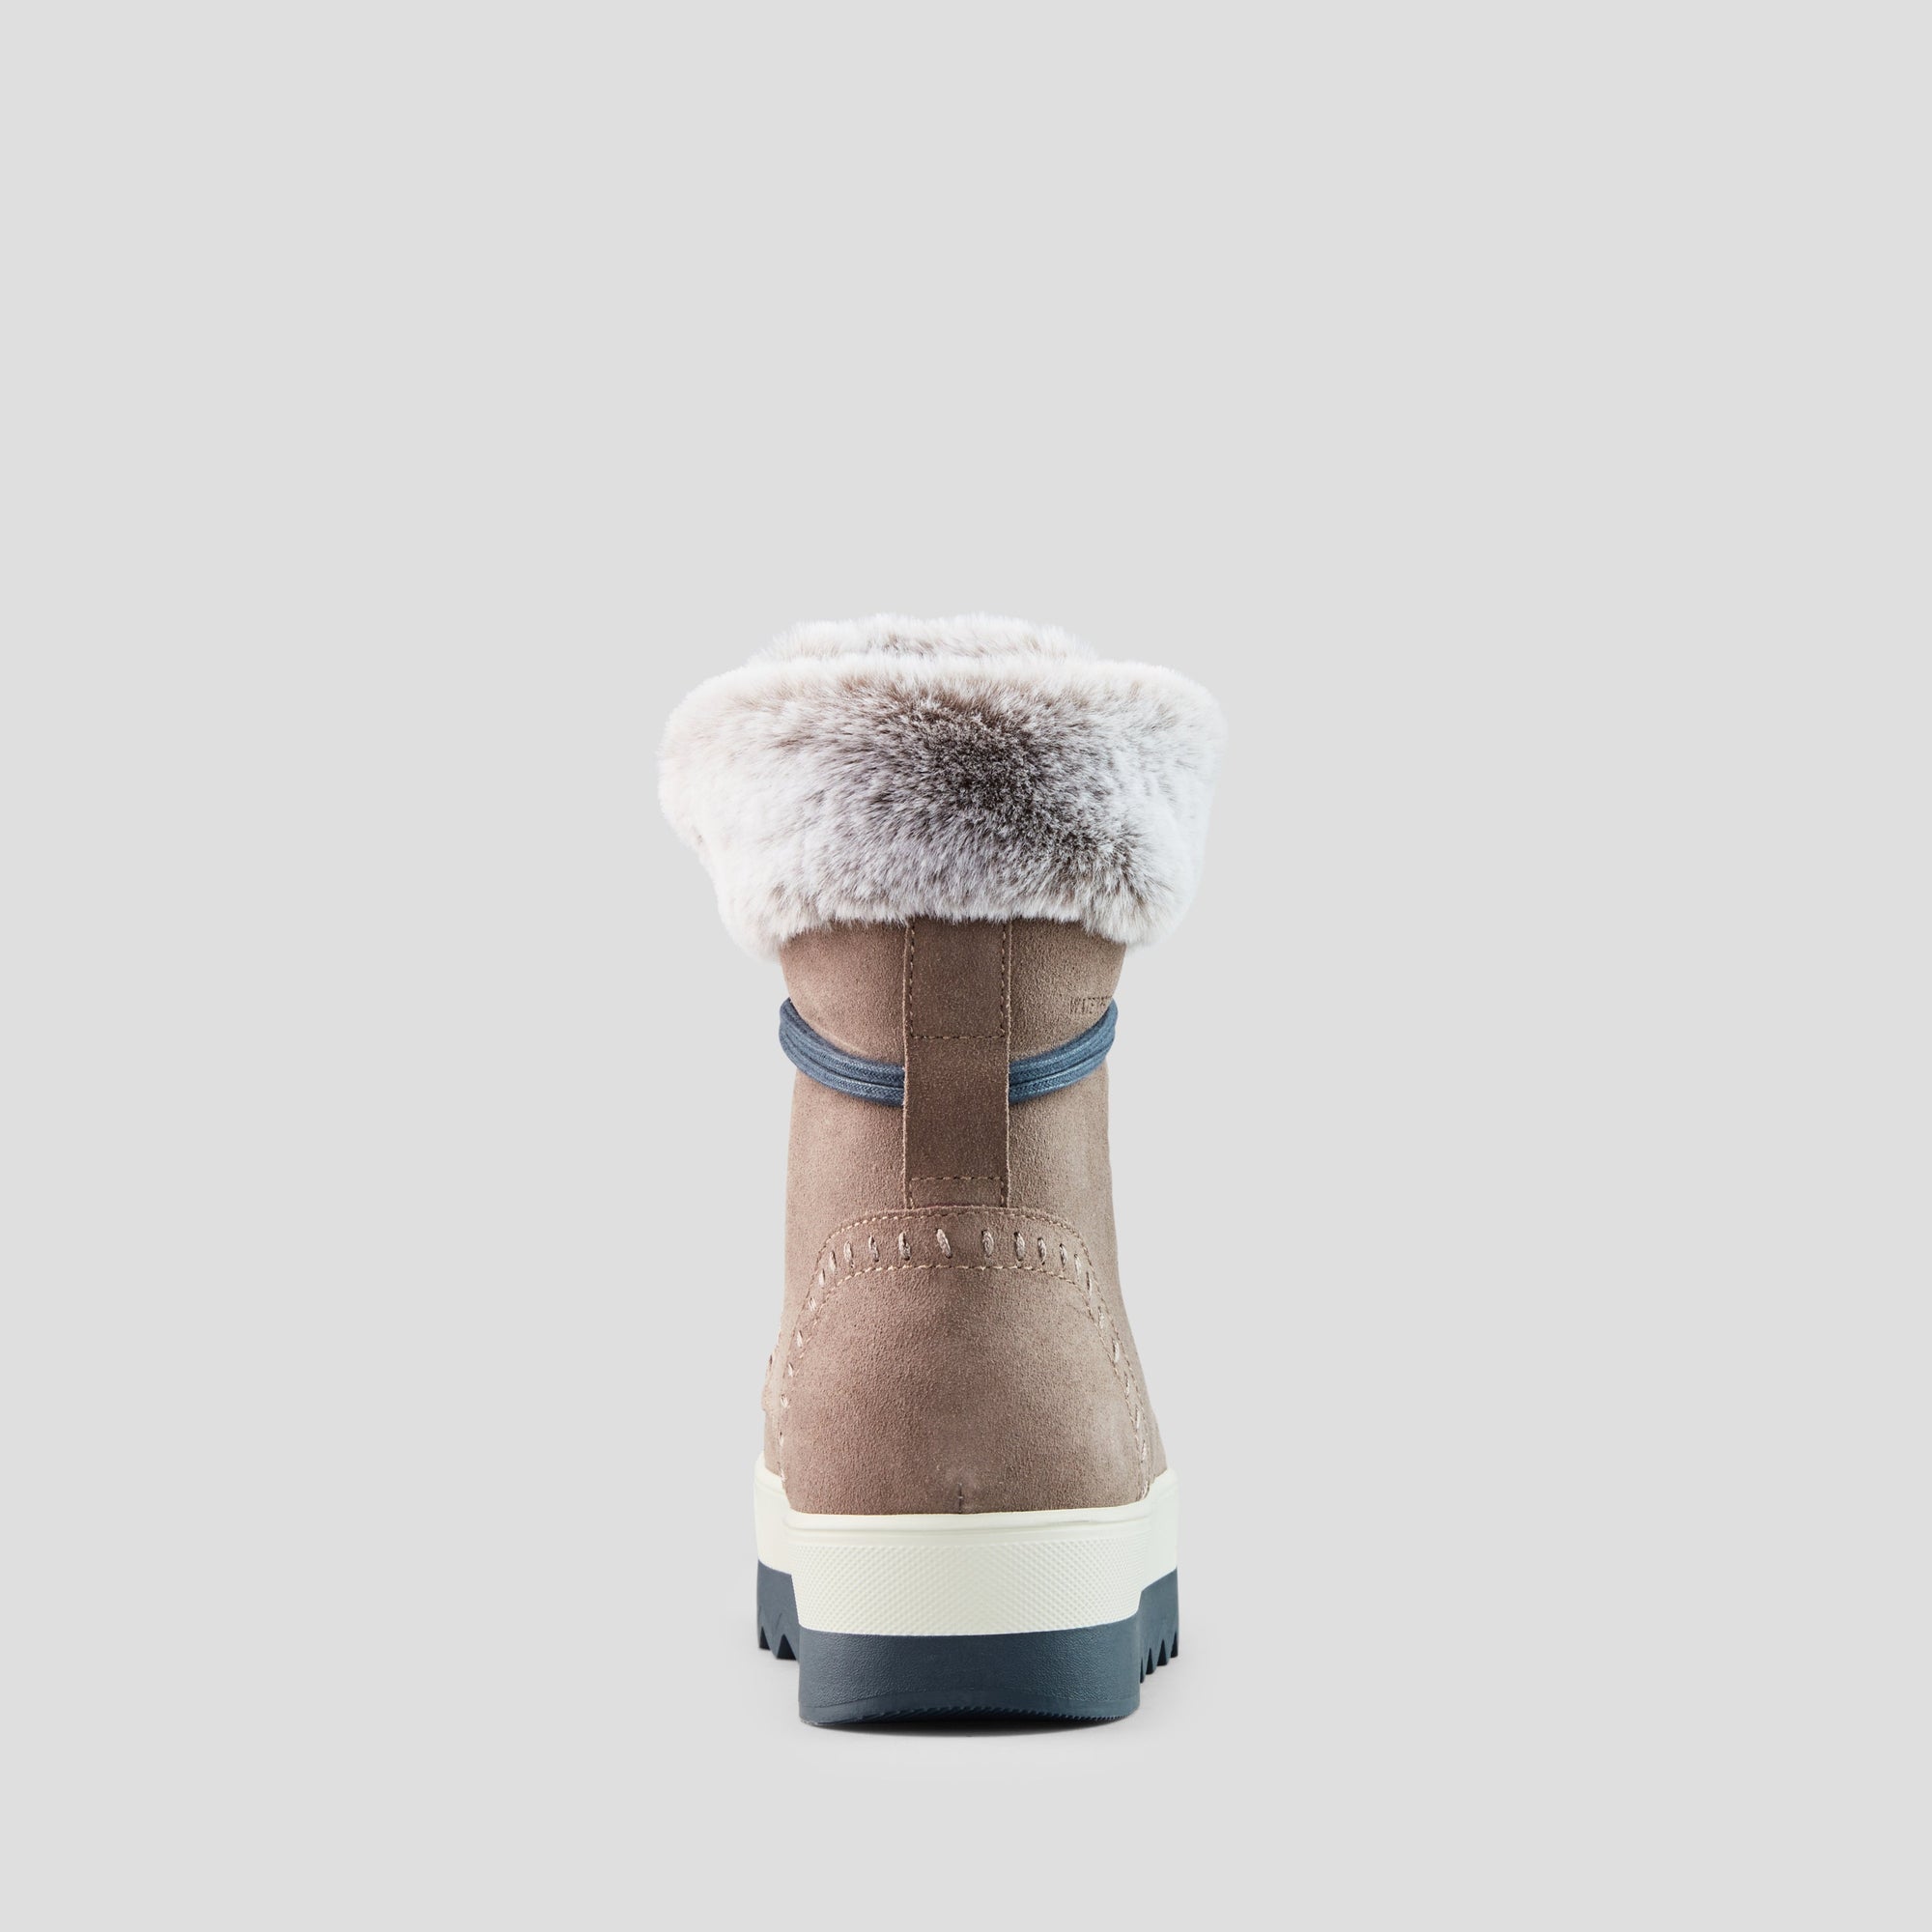 Vanetta - Botte d'hiver imperméable en suède - Colour Almond